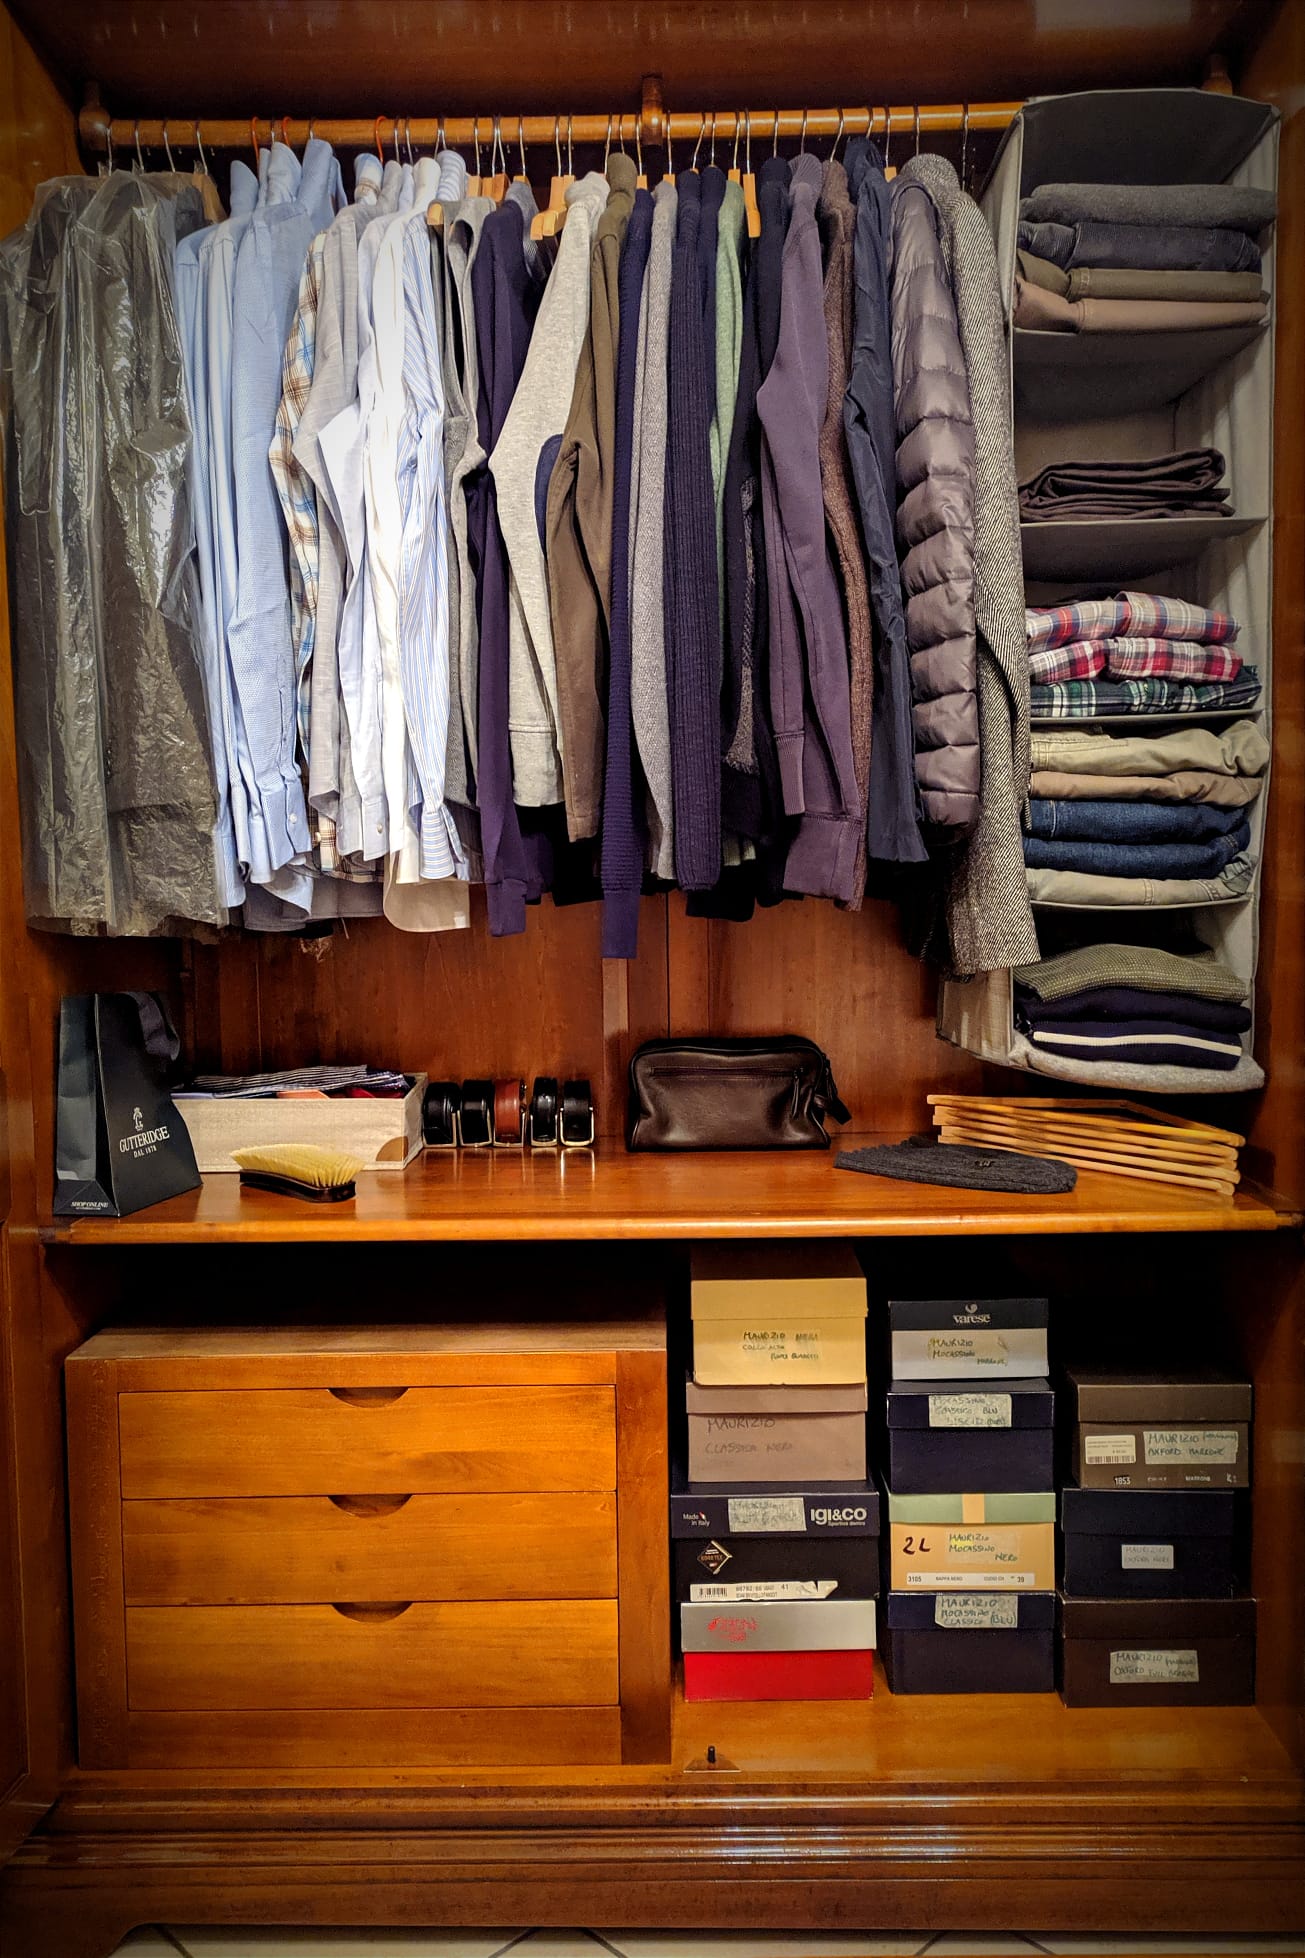 Organizzazione nel mio armadio (foto Maurizio Cuomo - NonSoloRisparmio.it)